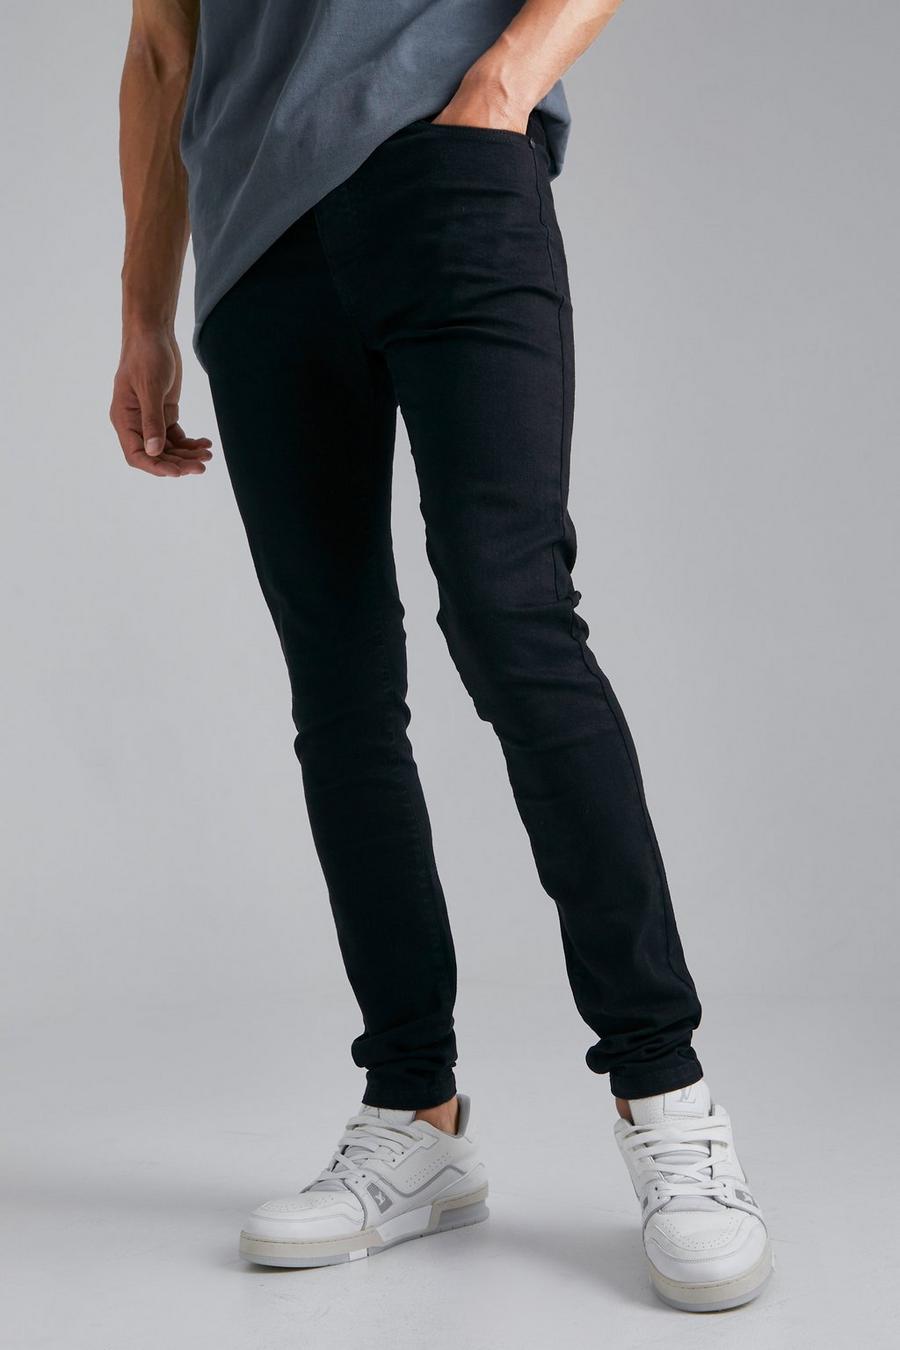 שחור אמיתי ג'ינס סקיני נמתח לגברים גבוהים image number 1